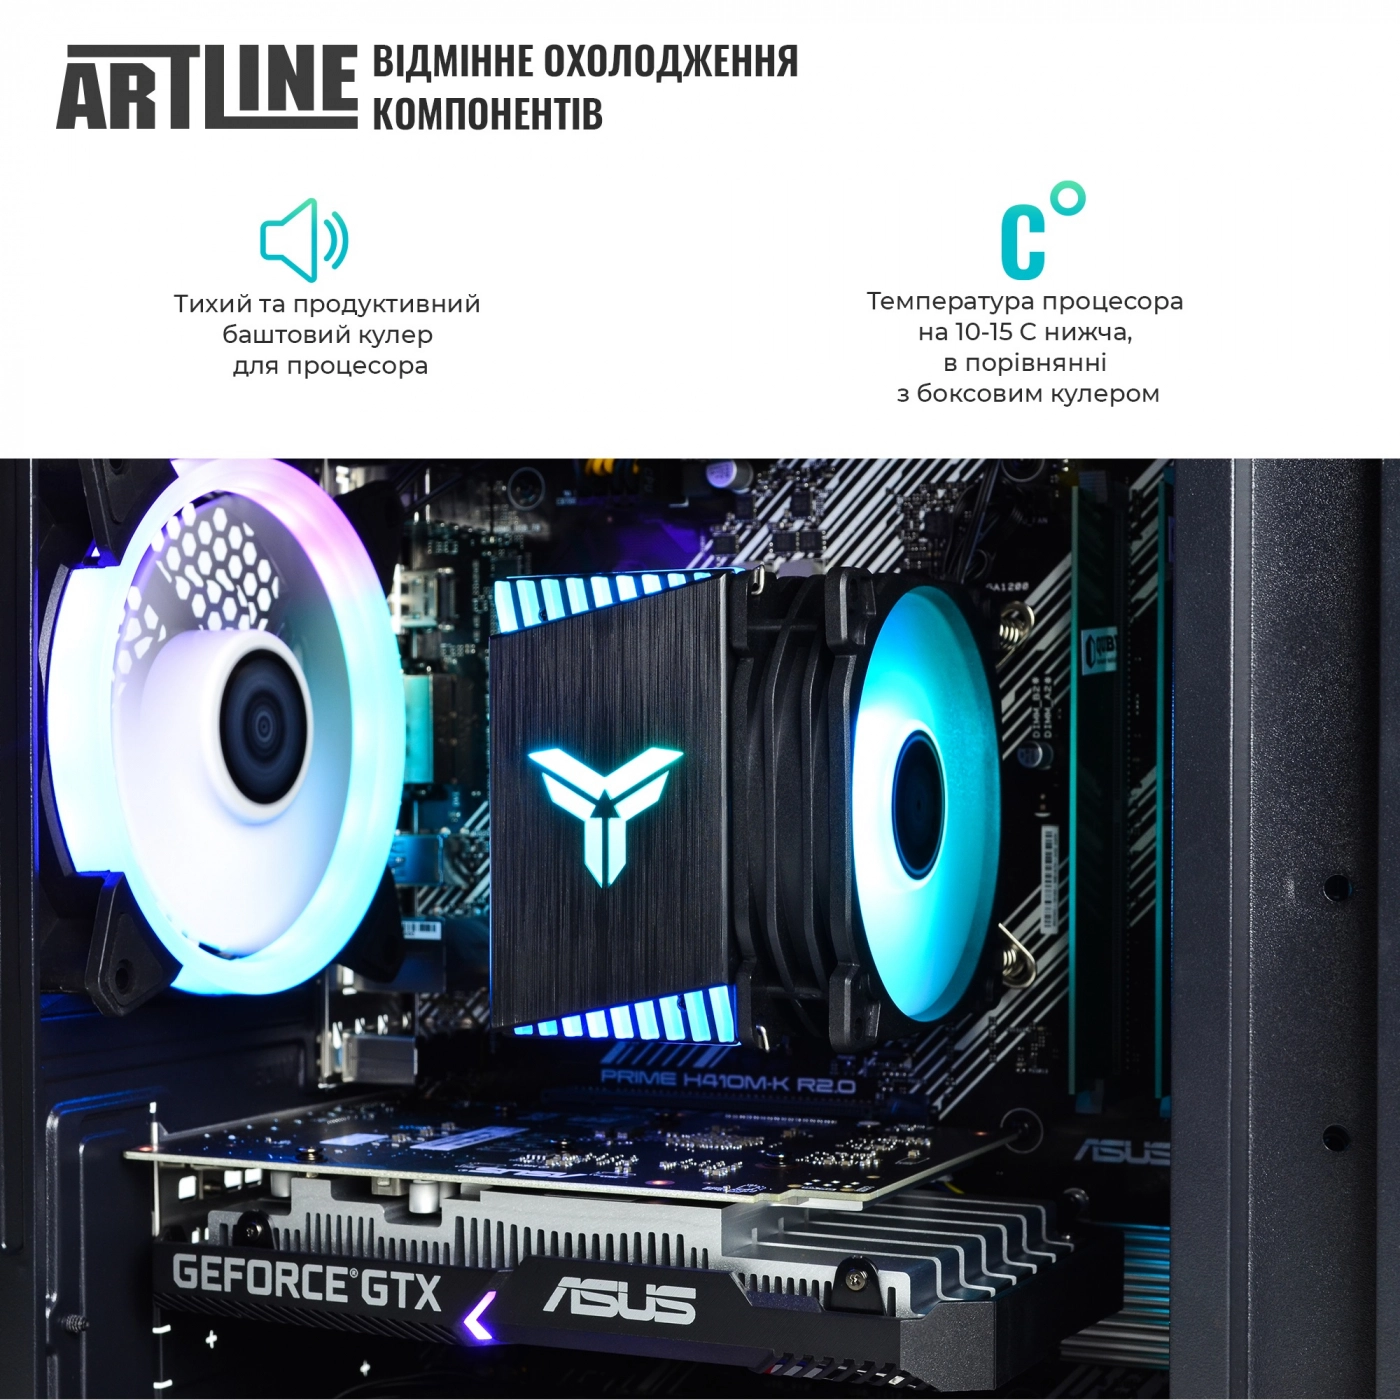 Купить Компьютер ARTLINE Gaming X45v28 - фото 3